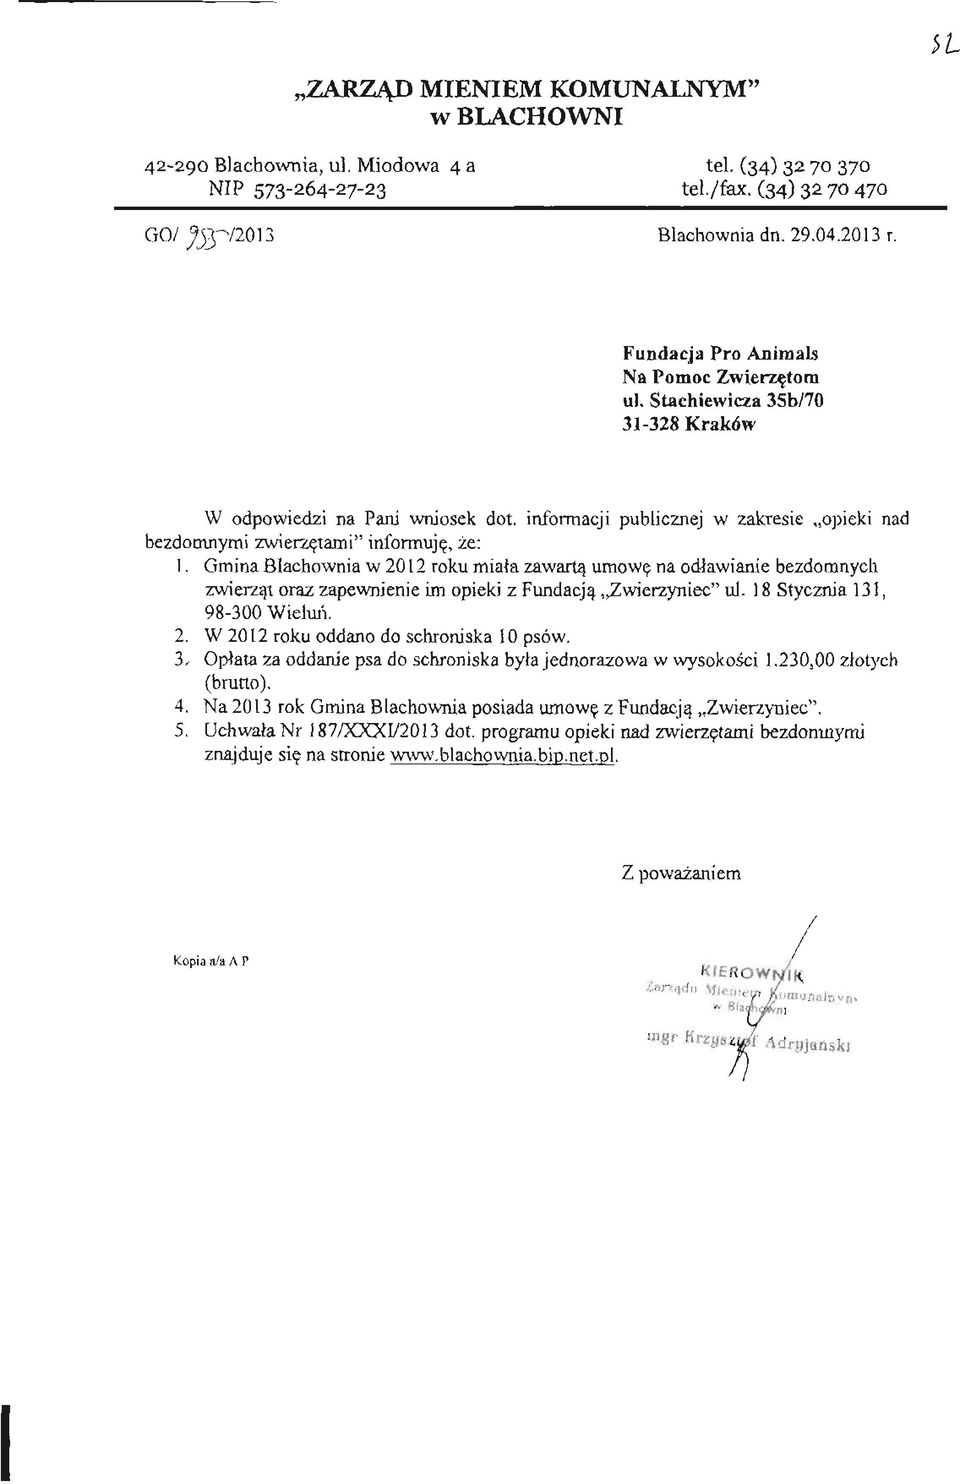 Gmina Blachownia w 2012 roku miała zawartą umowę na odławianie bezdomnych zwierząt oraz zapewnienie im opieki z Fundacją Zwierzyniec" ul. 18 Stycznia 131, 98-300 Wieluń, 2.